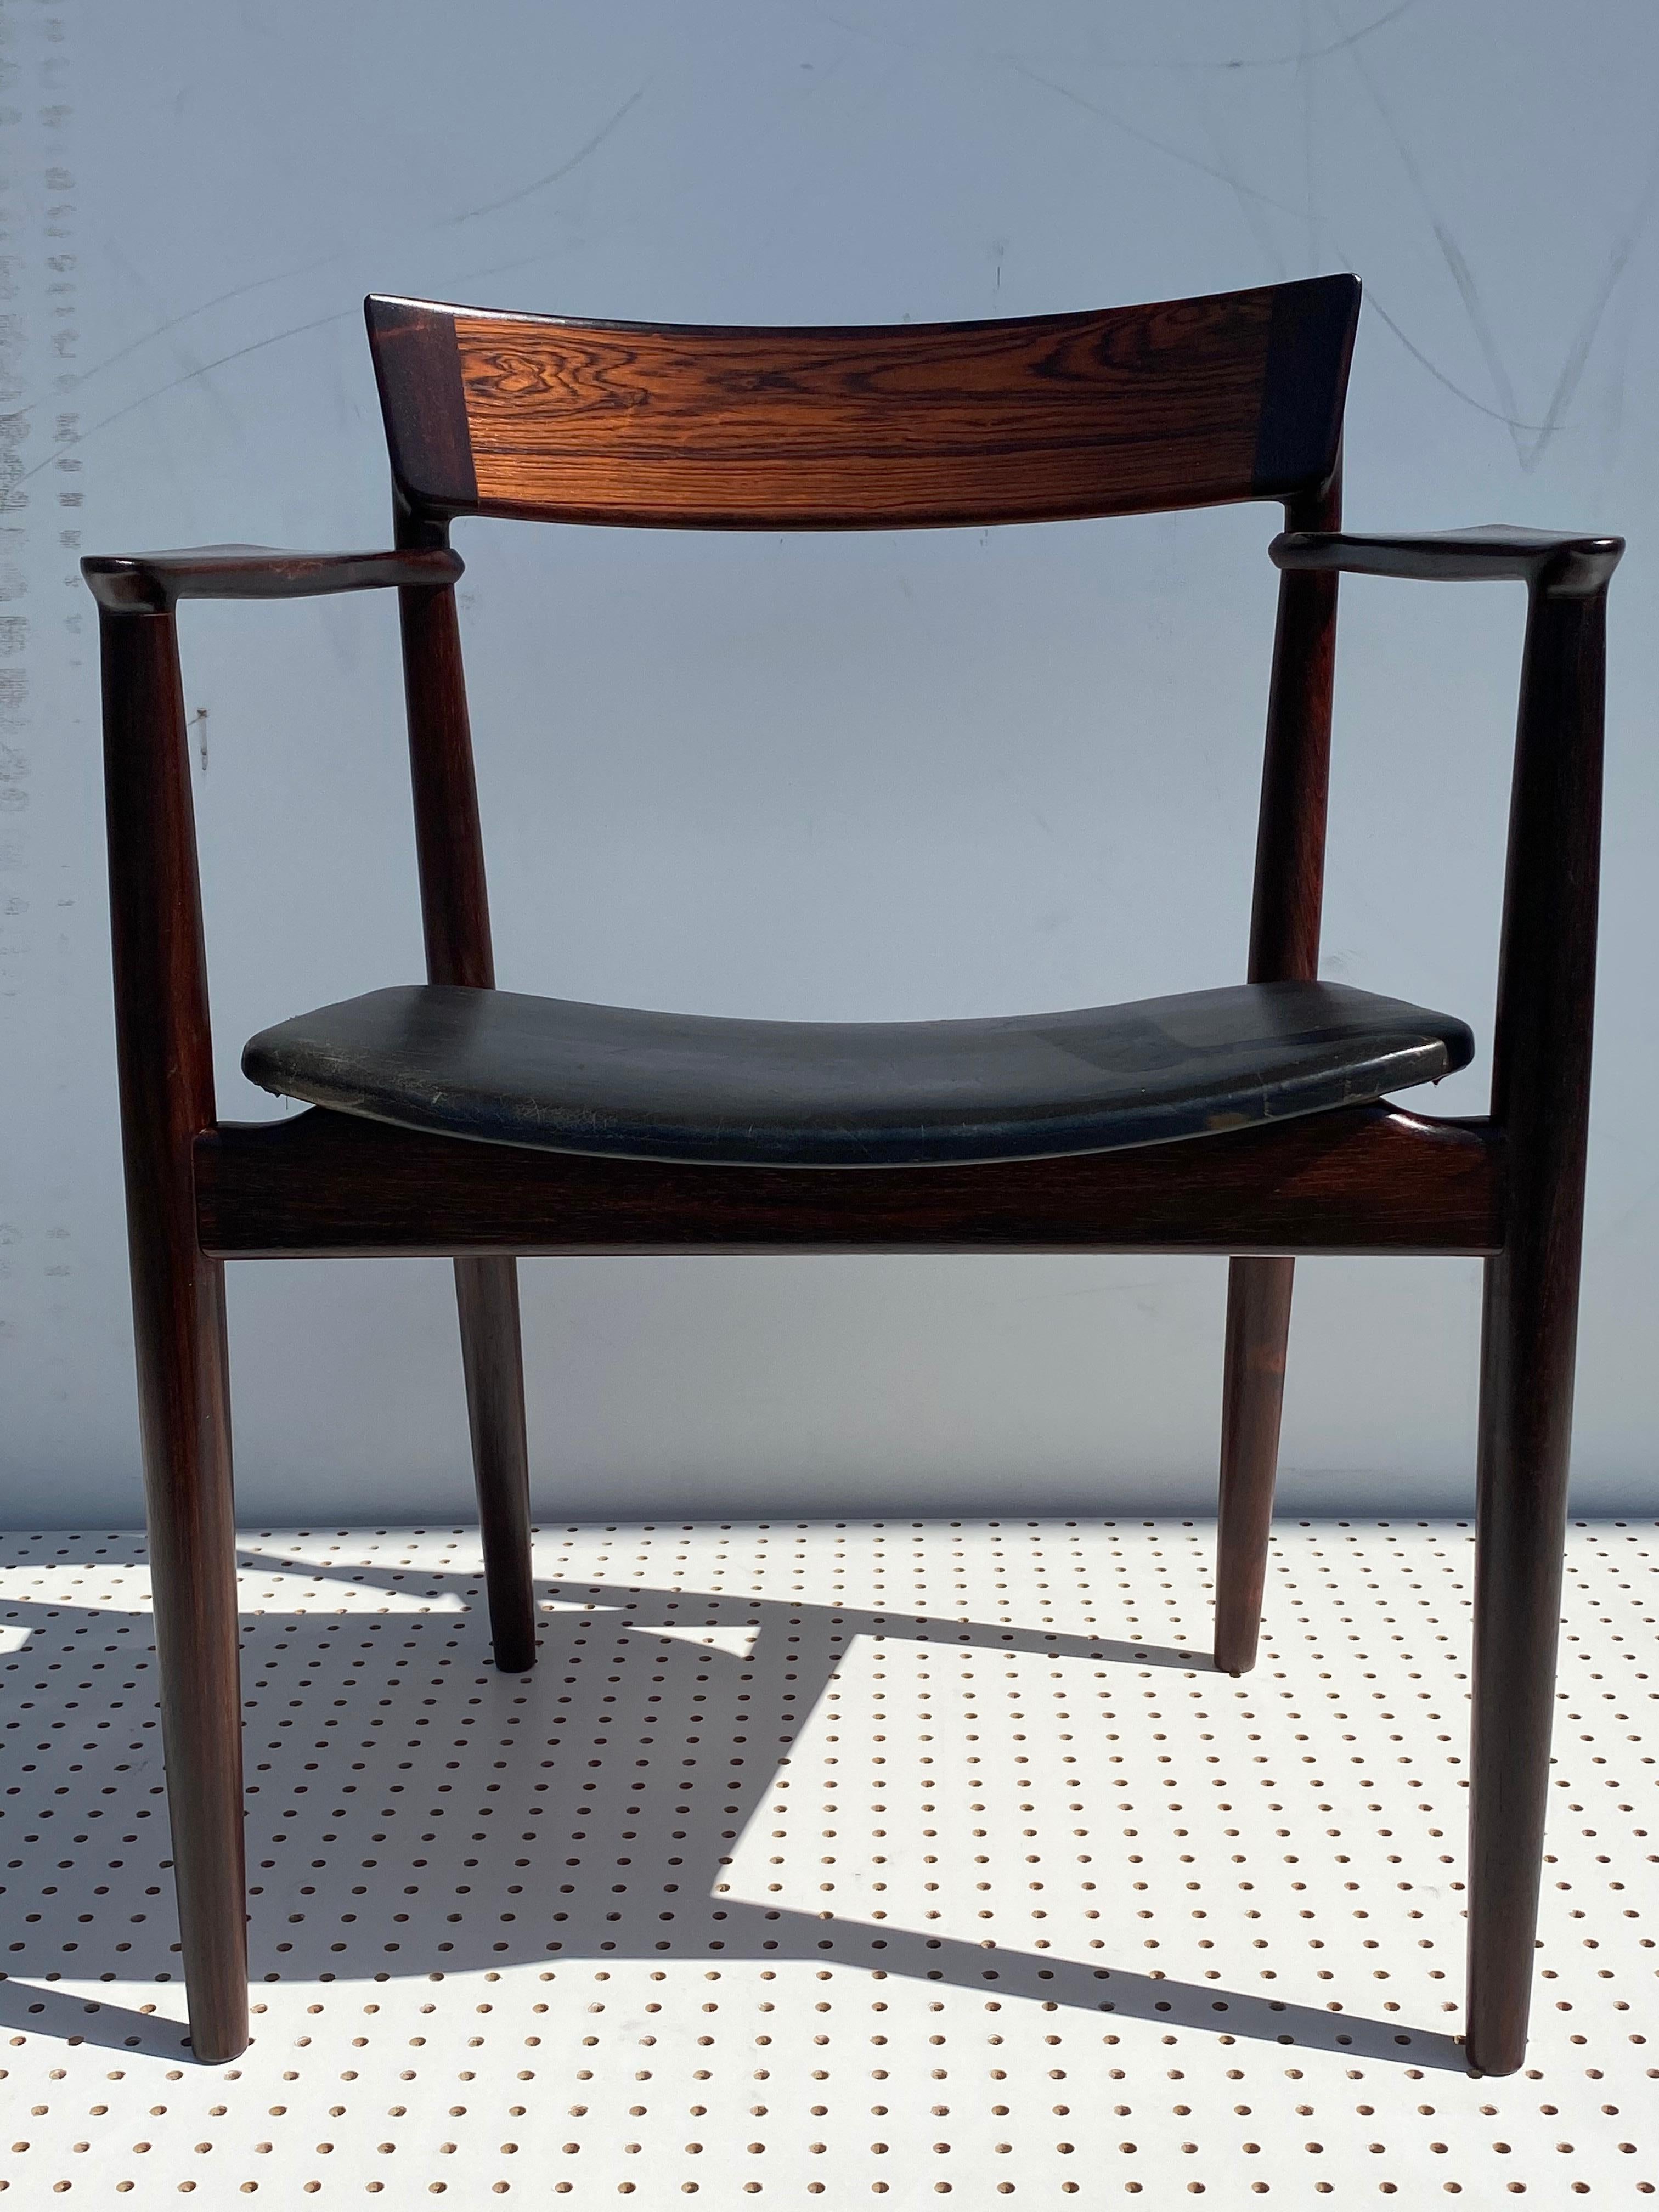 Palisander Schreibtisch / Sessel in original schwarzem Leder im Stil von Niels Vodder.
Maße: Sitz ist 16,5